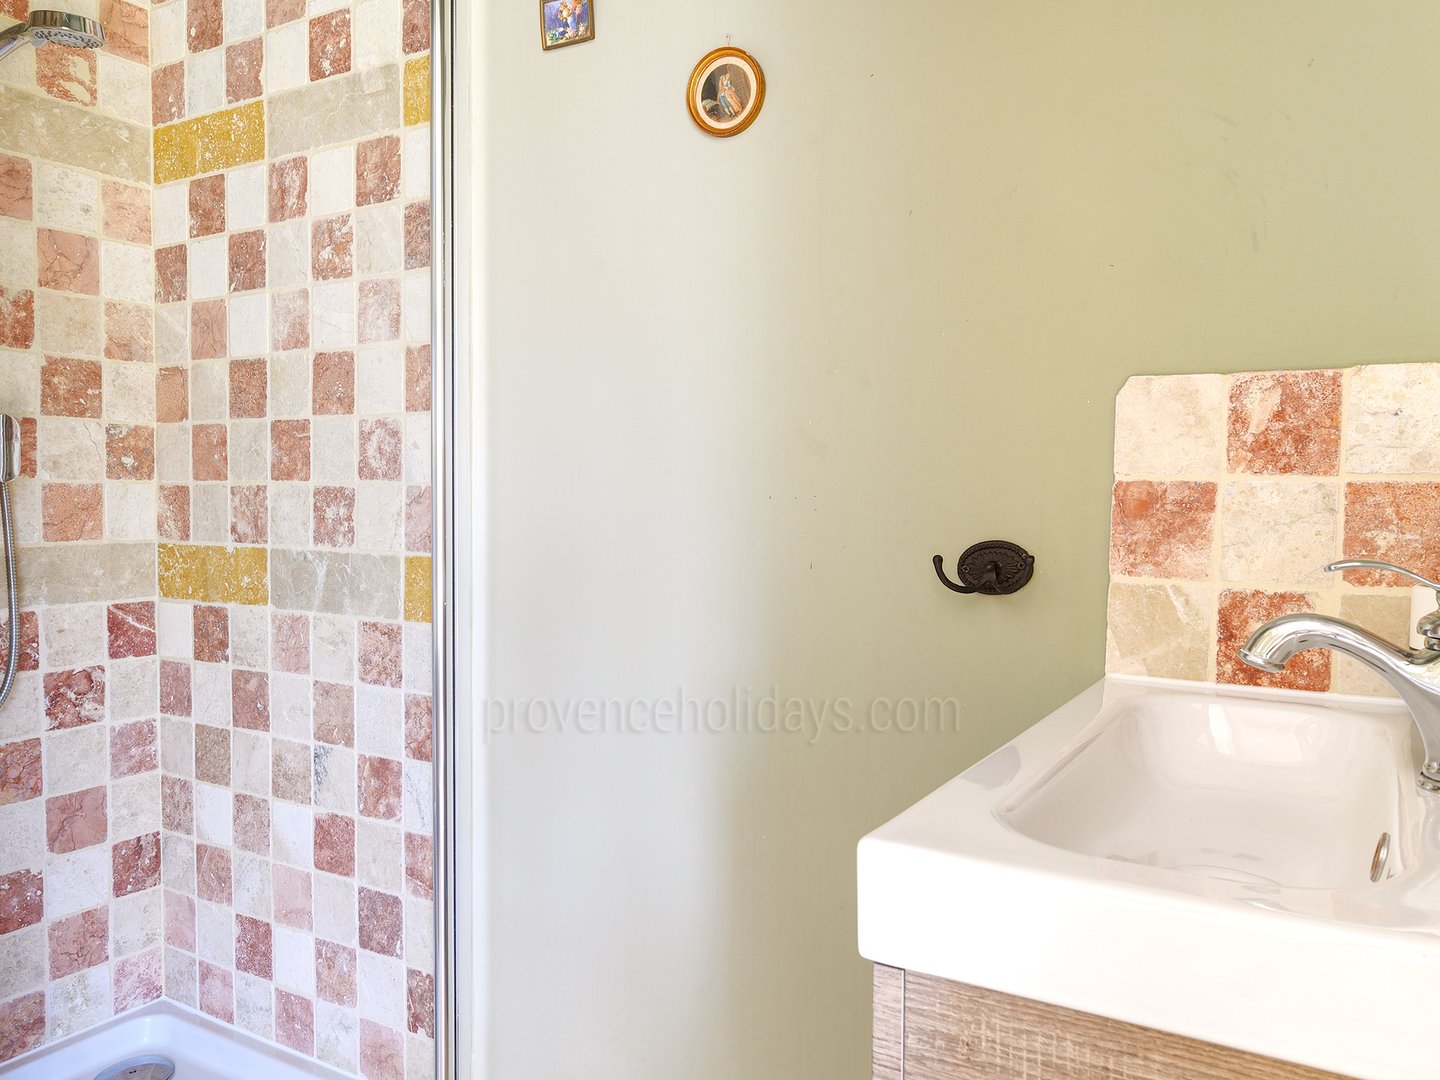 71 - Le Mas des Olives: Villa: Bathroom